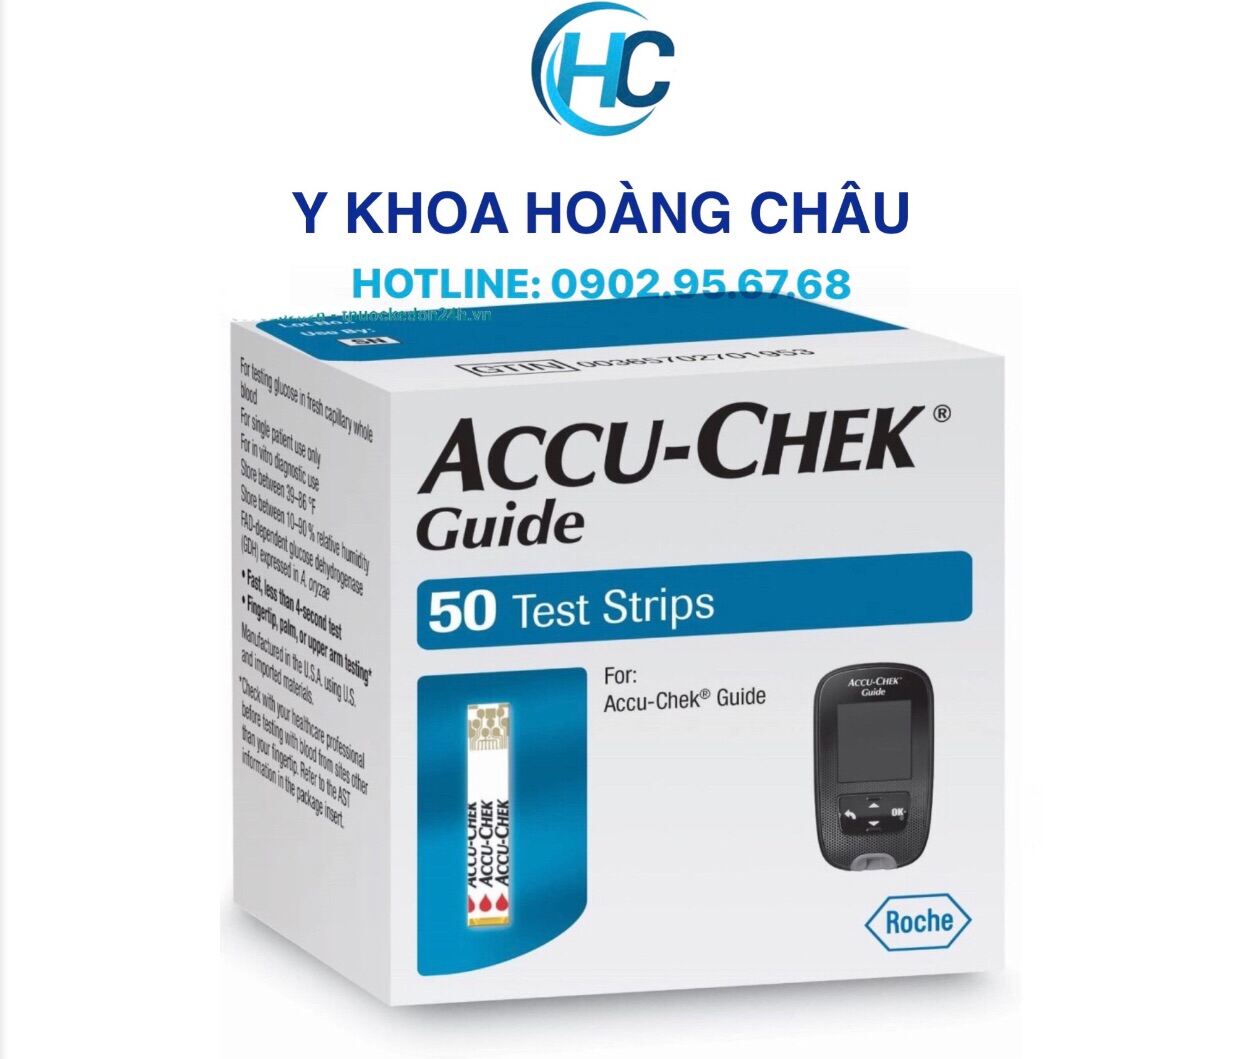 CHÍNH HÃNG Que thử đường huyết Accu-Chek Guide Hộp 25-50 que